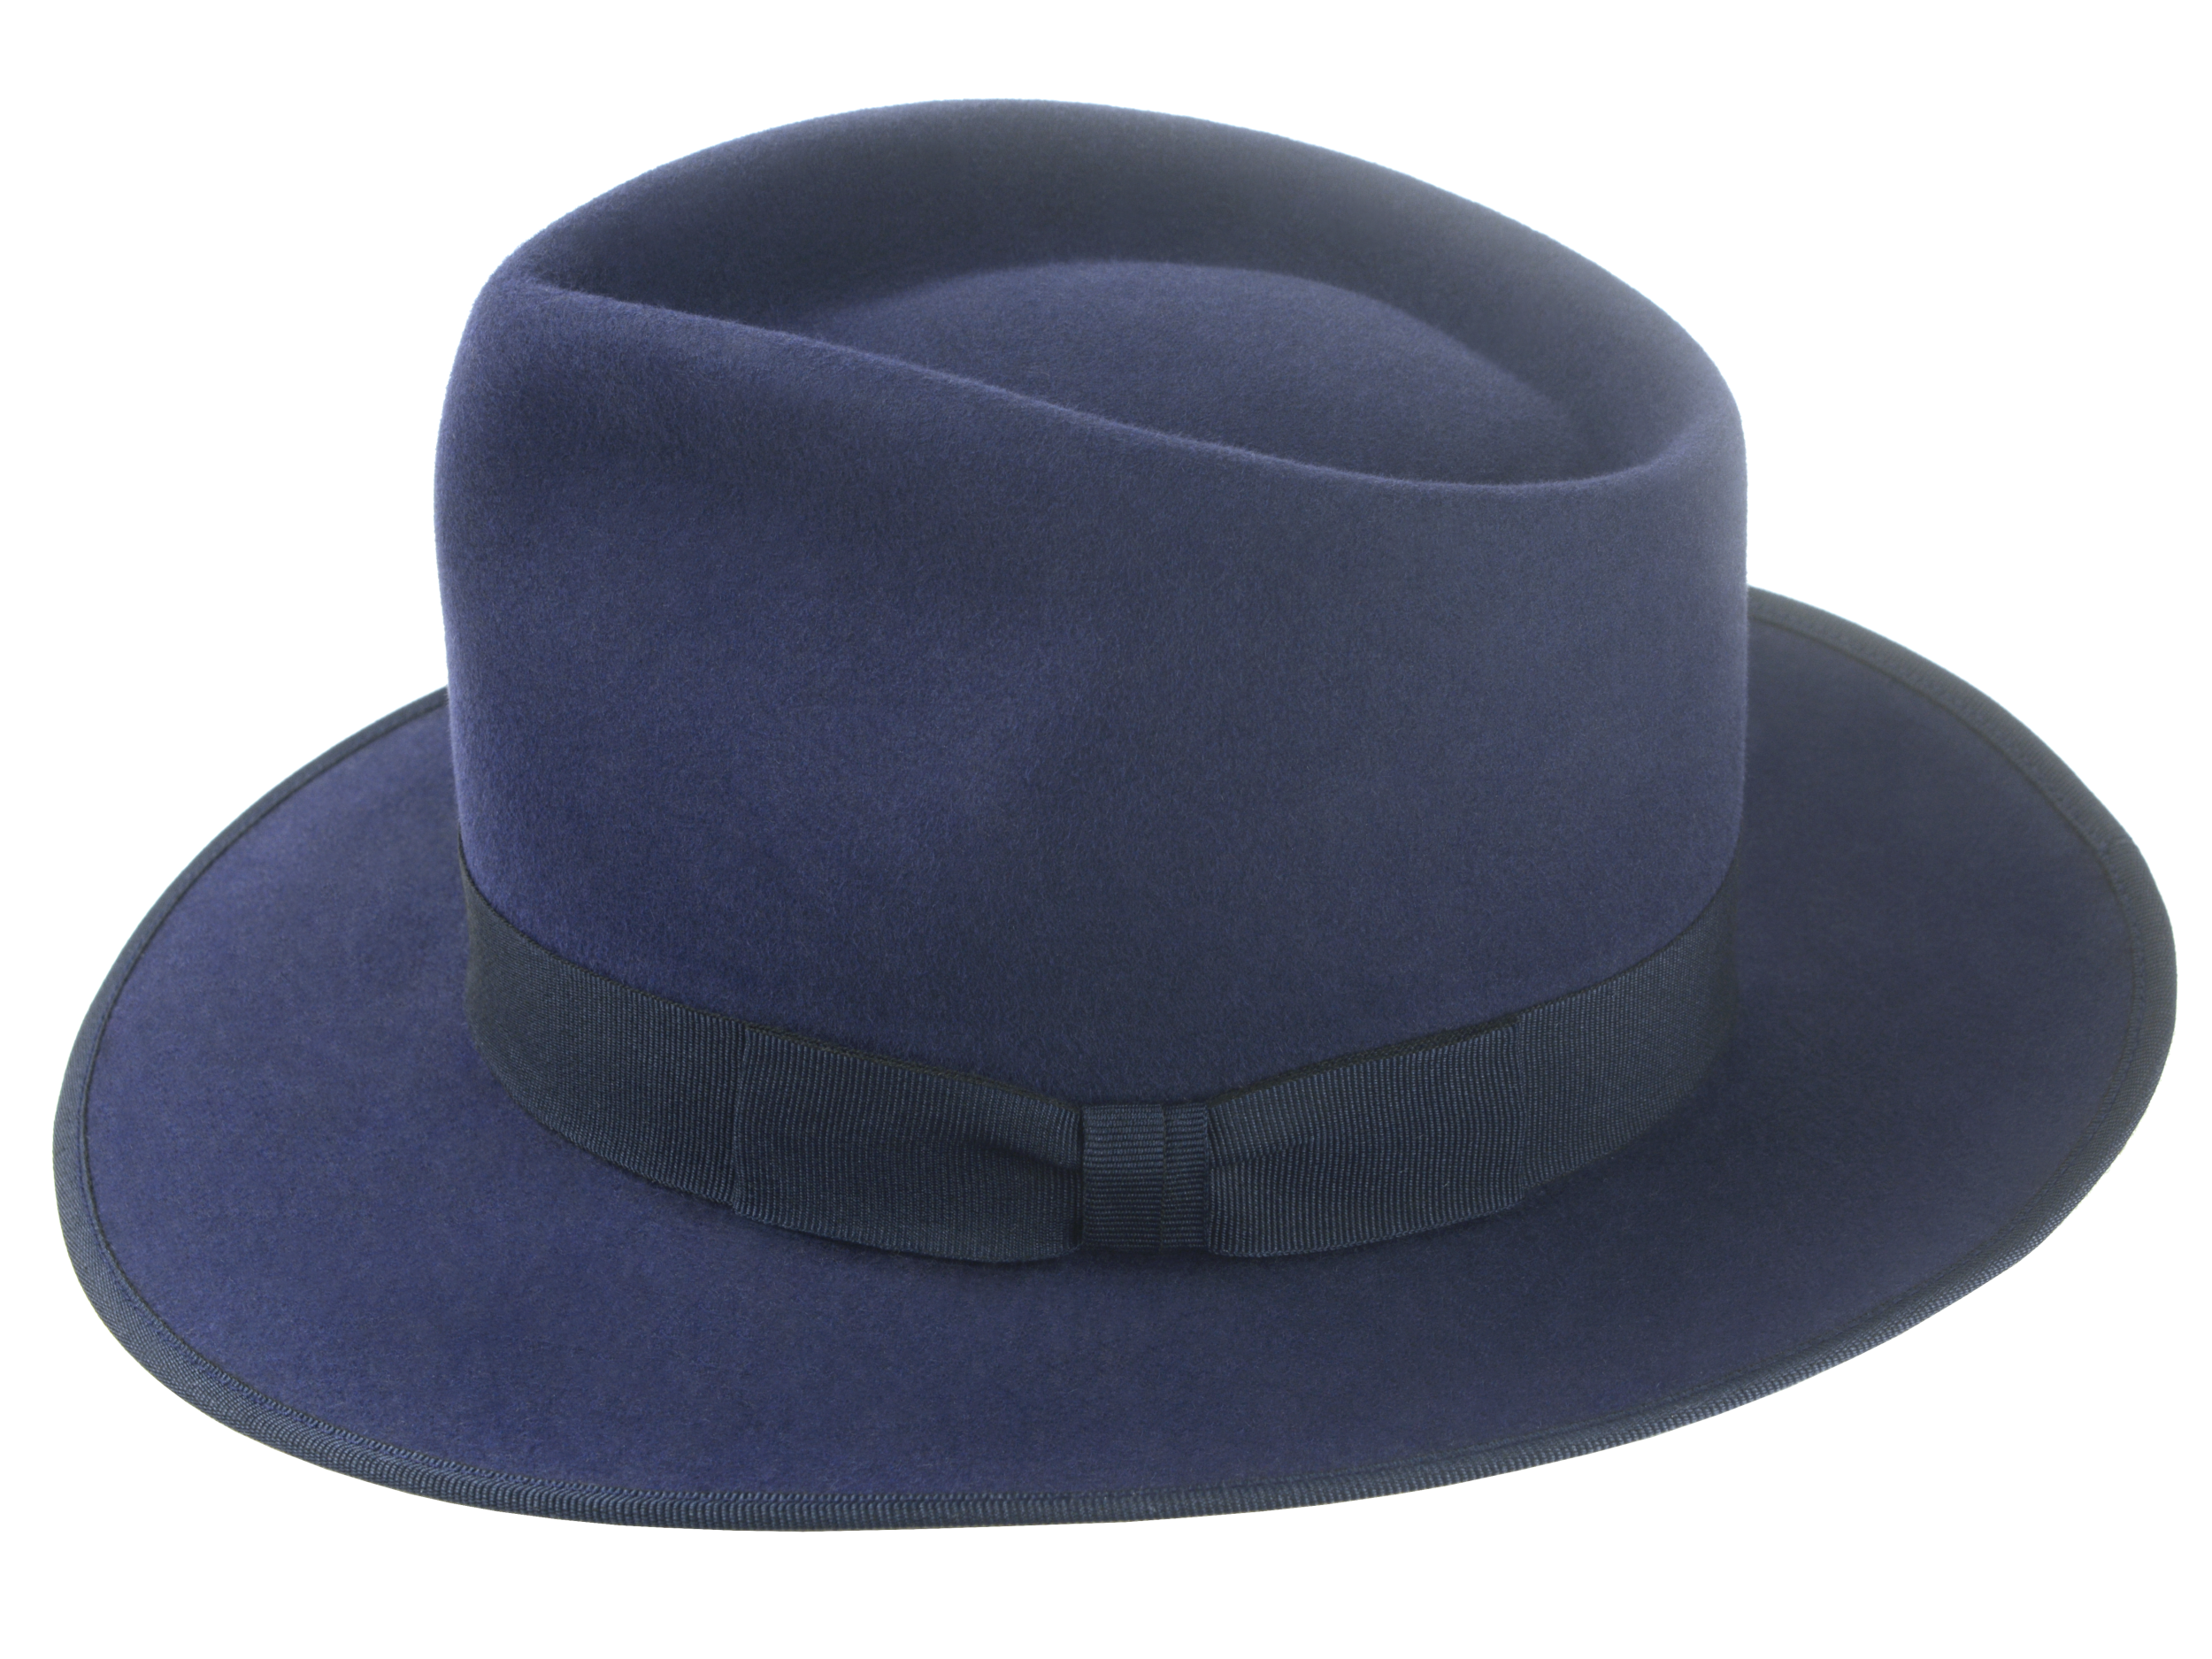 Tony - The Gentleman's Fedora | Agnoulita Hats Agnoulita Hats 2 | Men's Fedora, Navy, Navy Blue, Rabbit fur felt, Teardrop